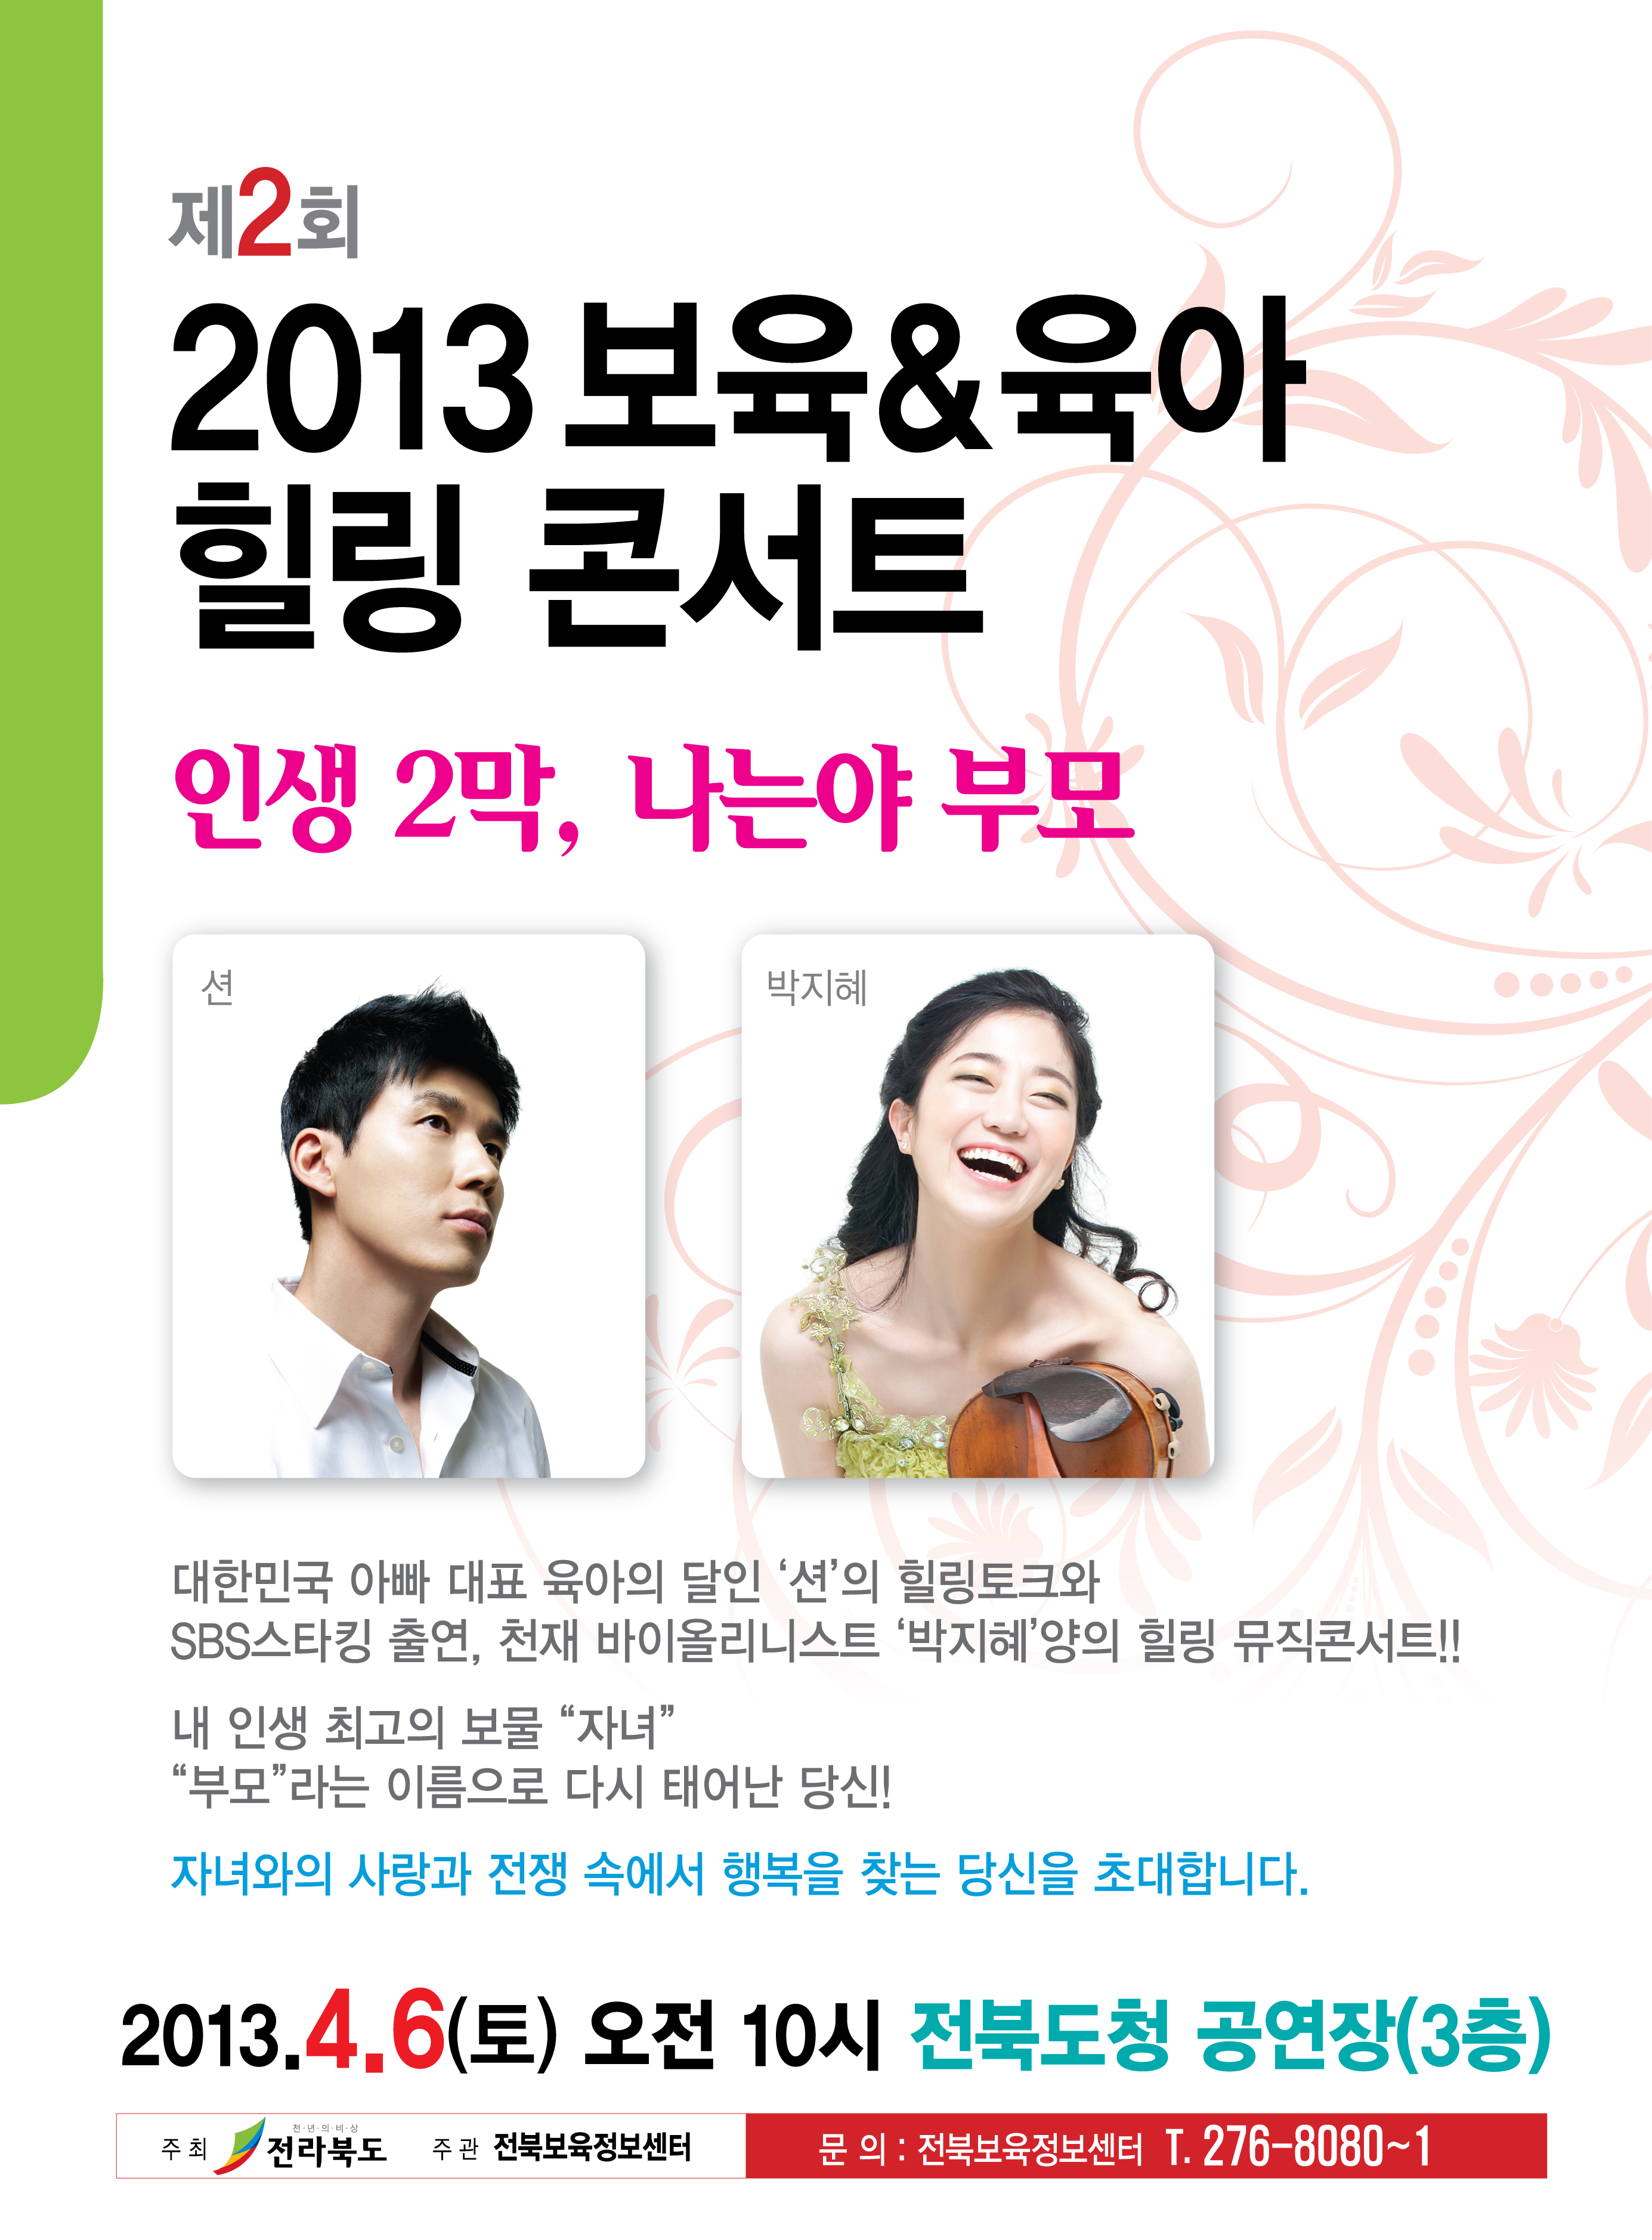 2013년 전북 보육&육아 힐링콘서트 개최 - 많은 참여